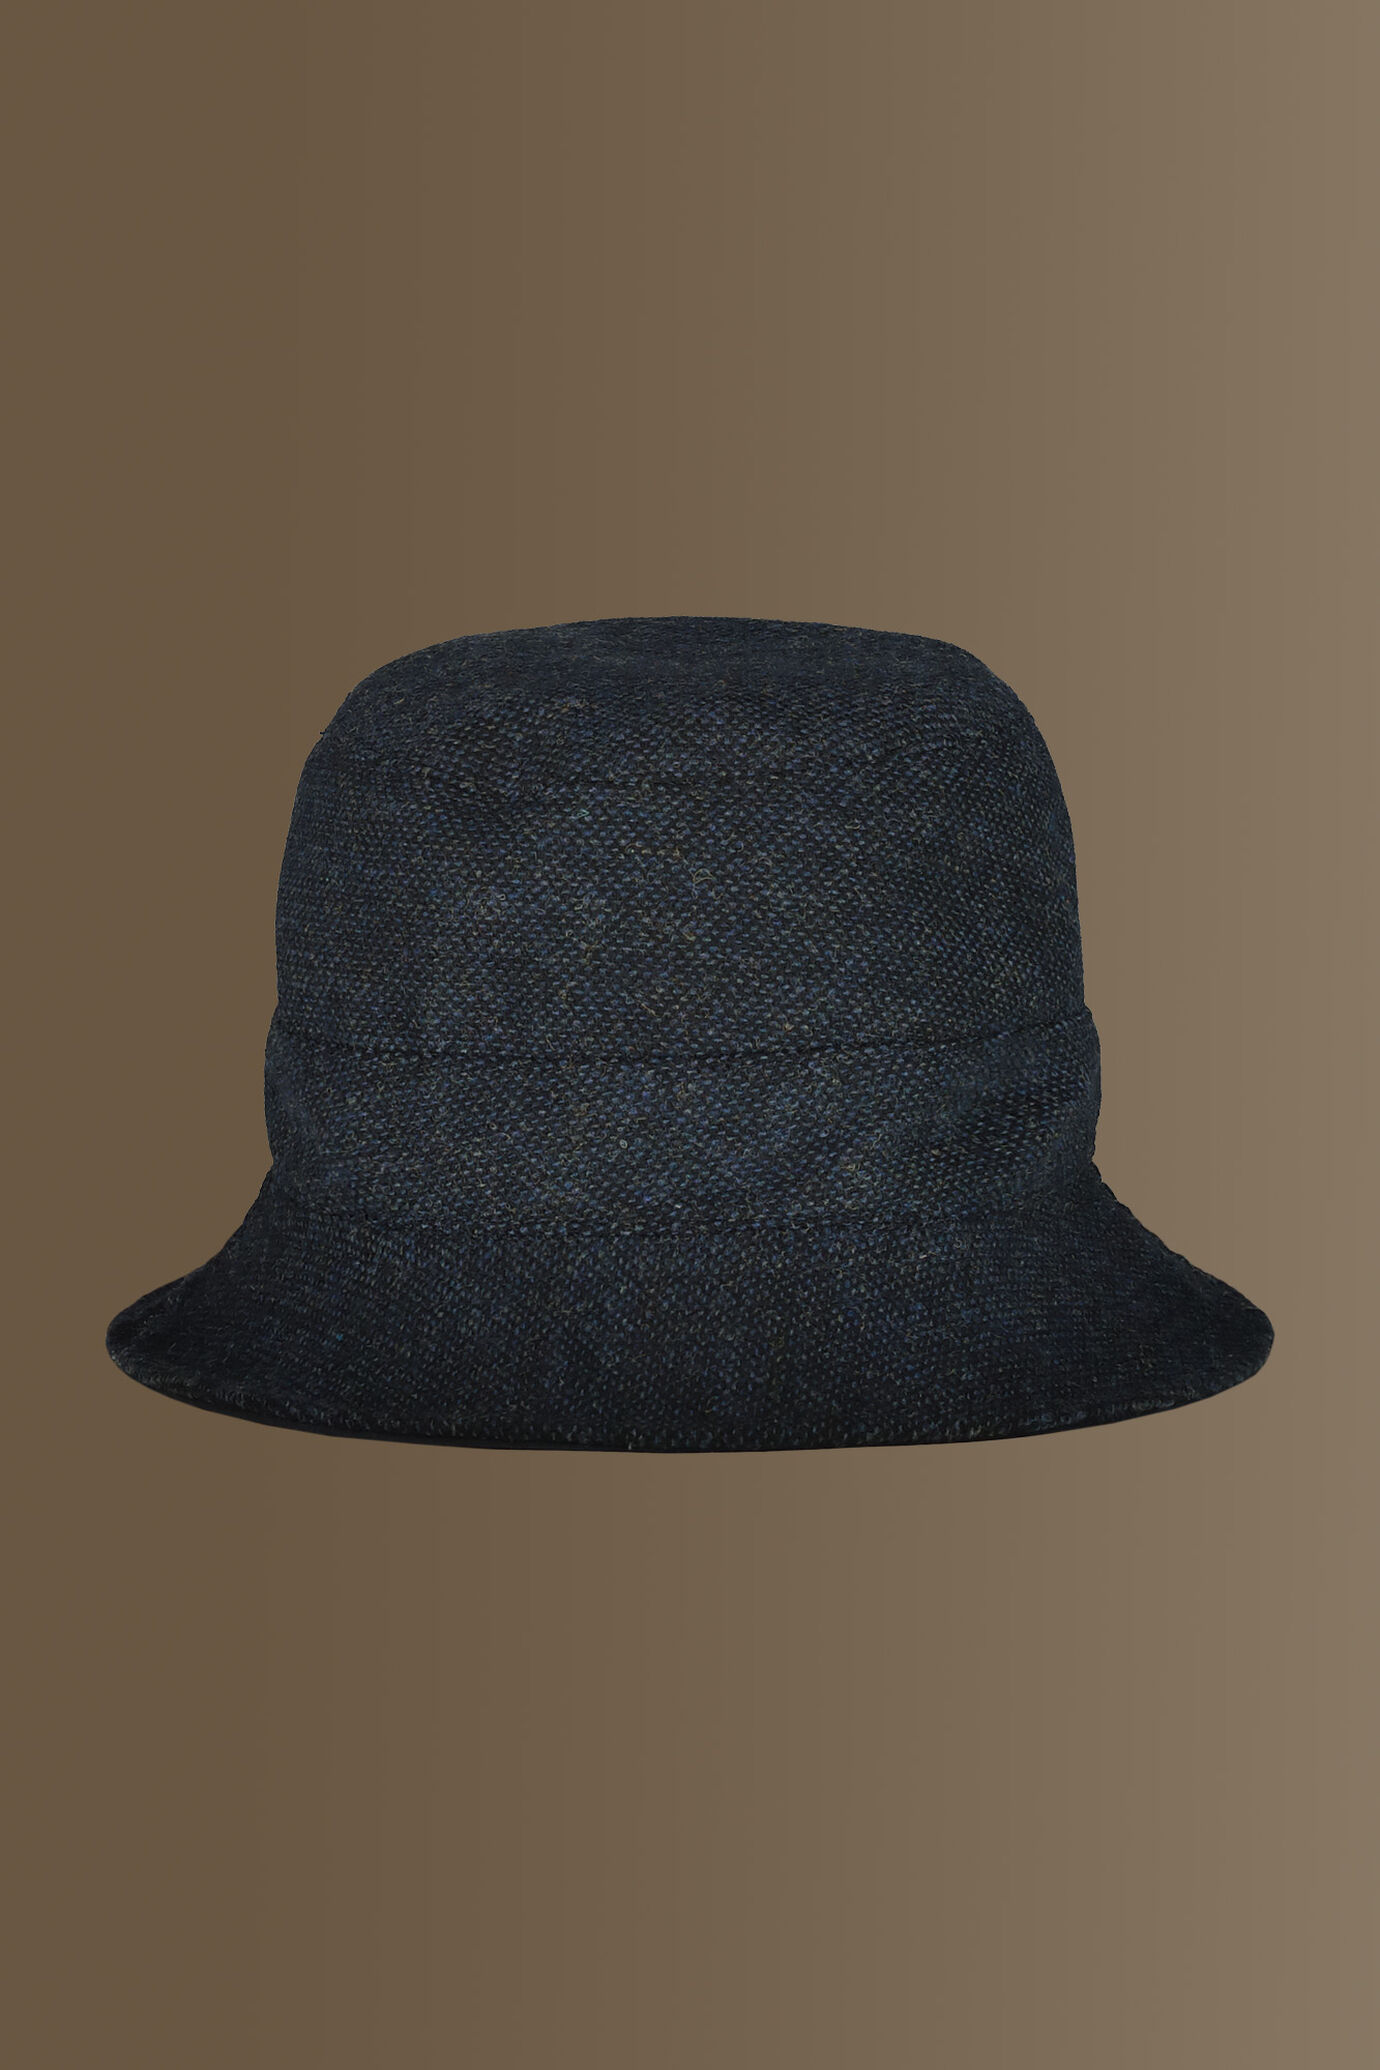 Fisherman hat - wool blend -birdseye fabric